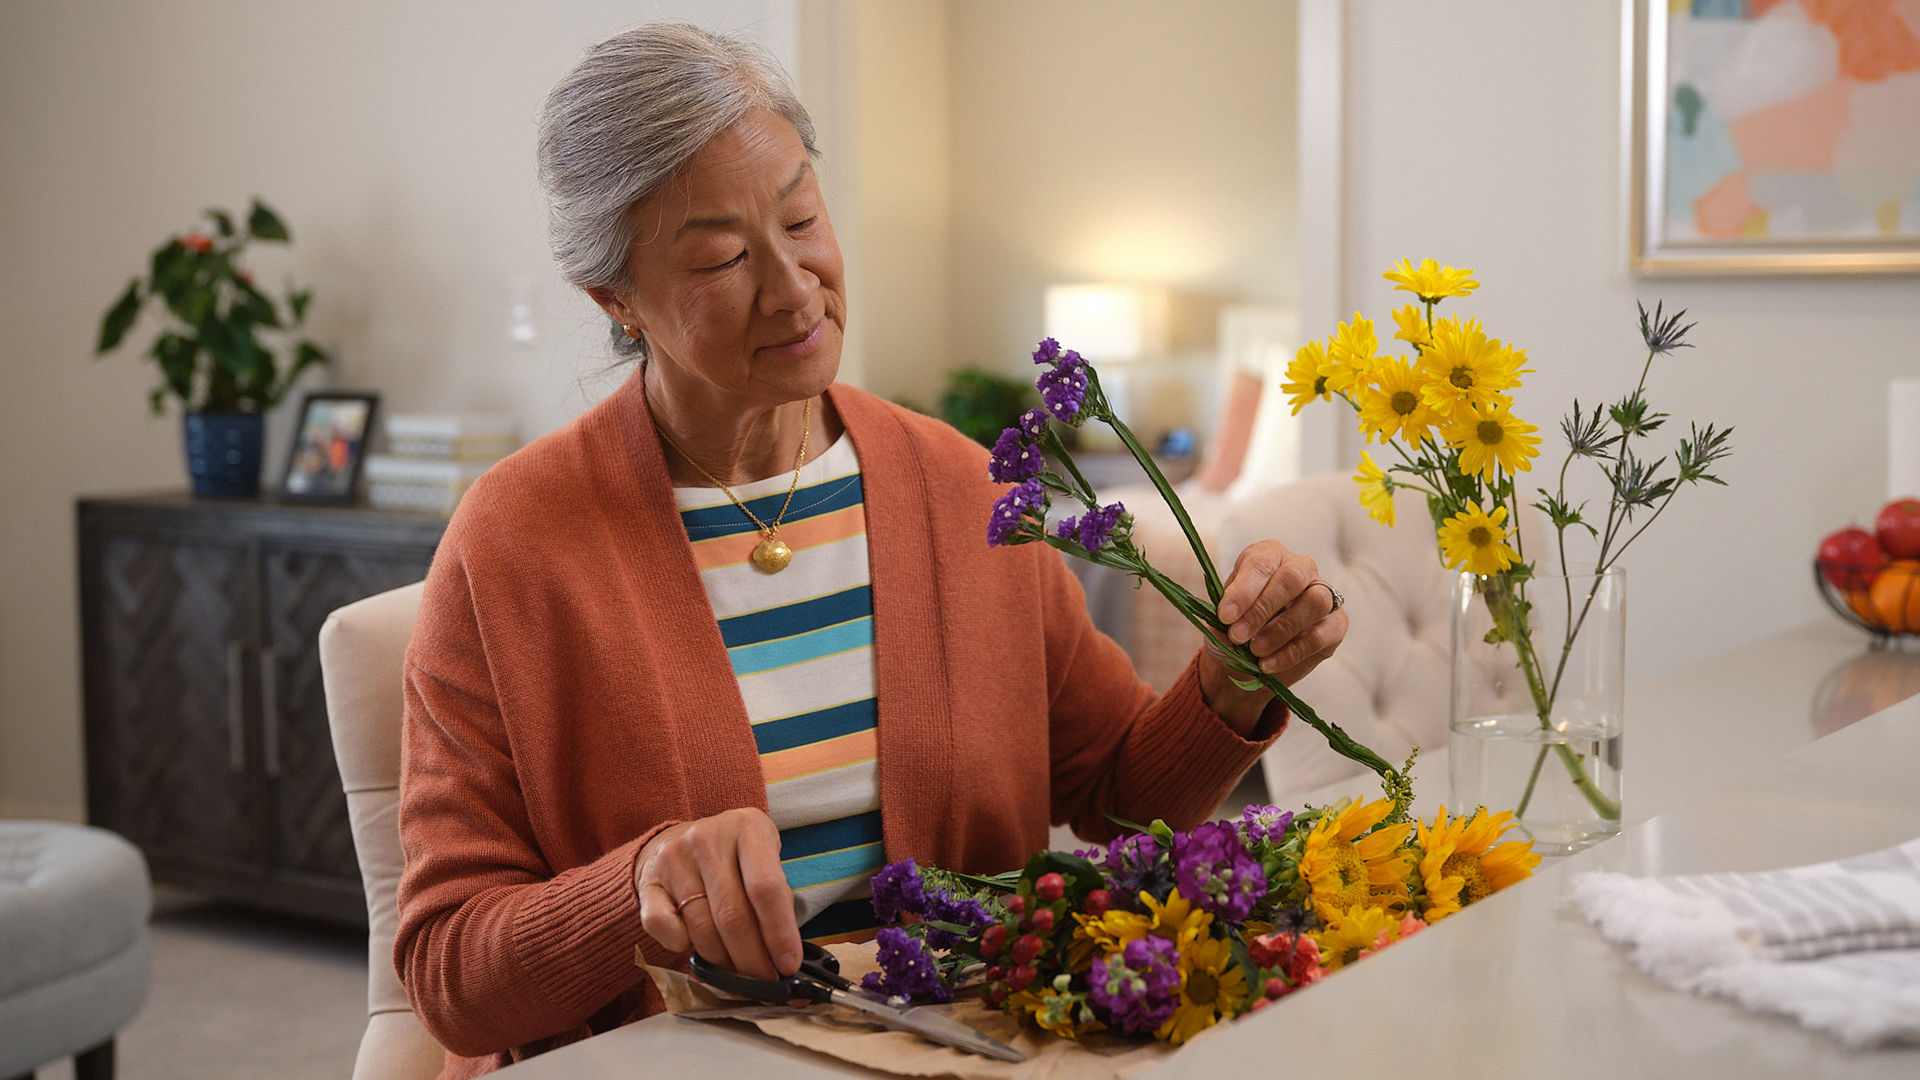 Older female putting together a vase of flowers